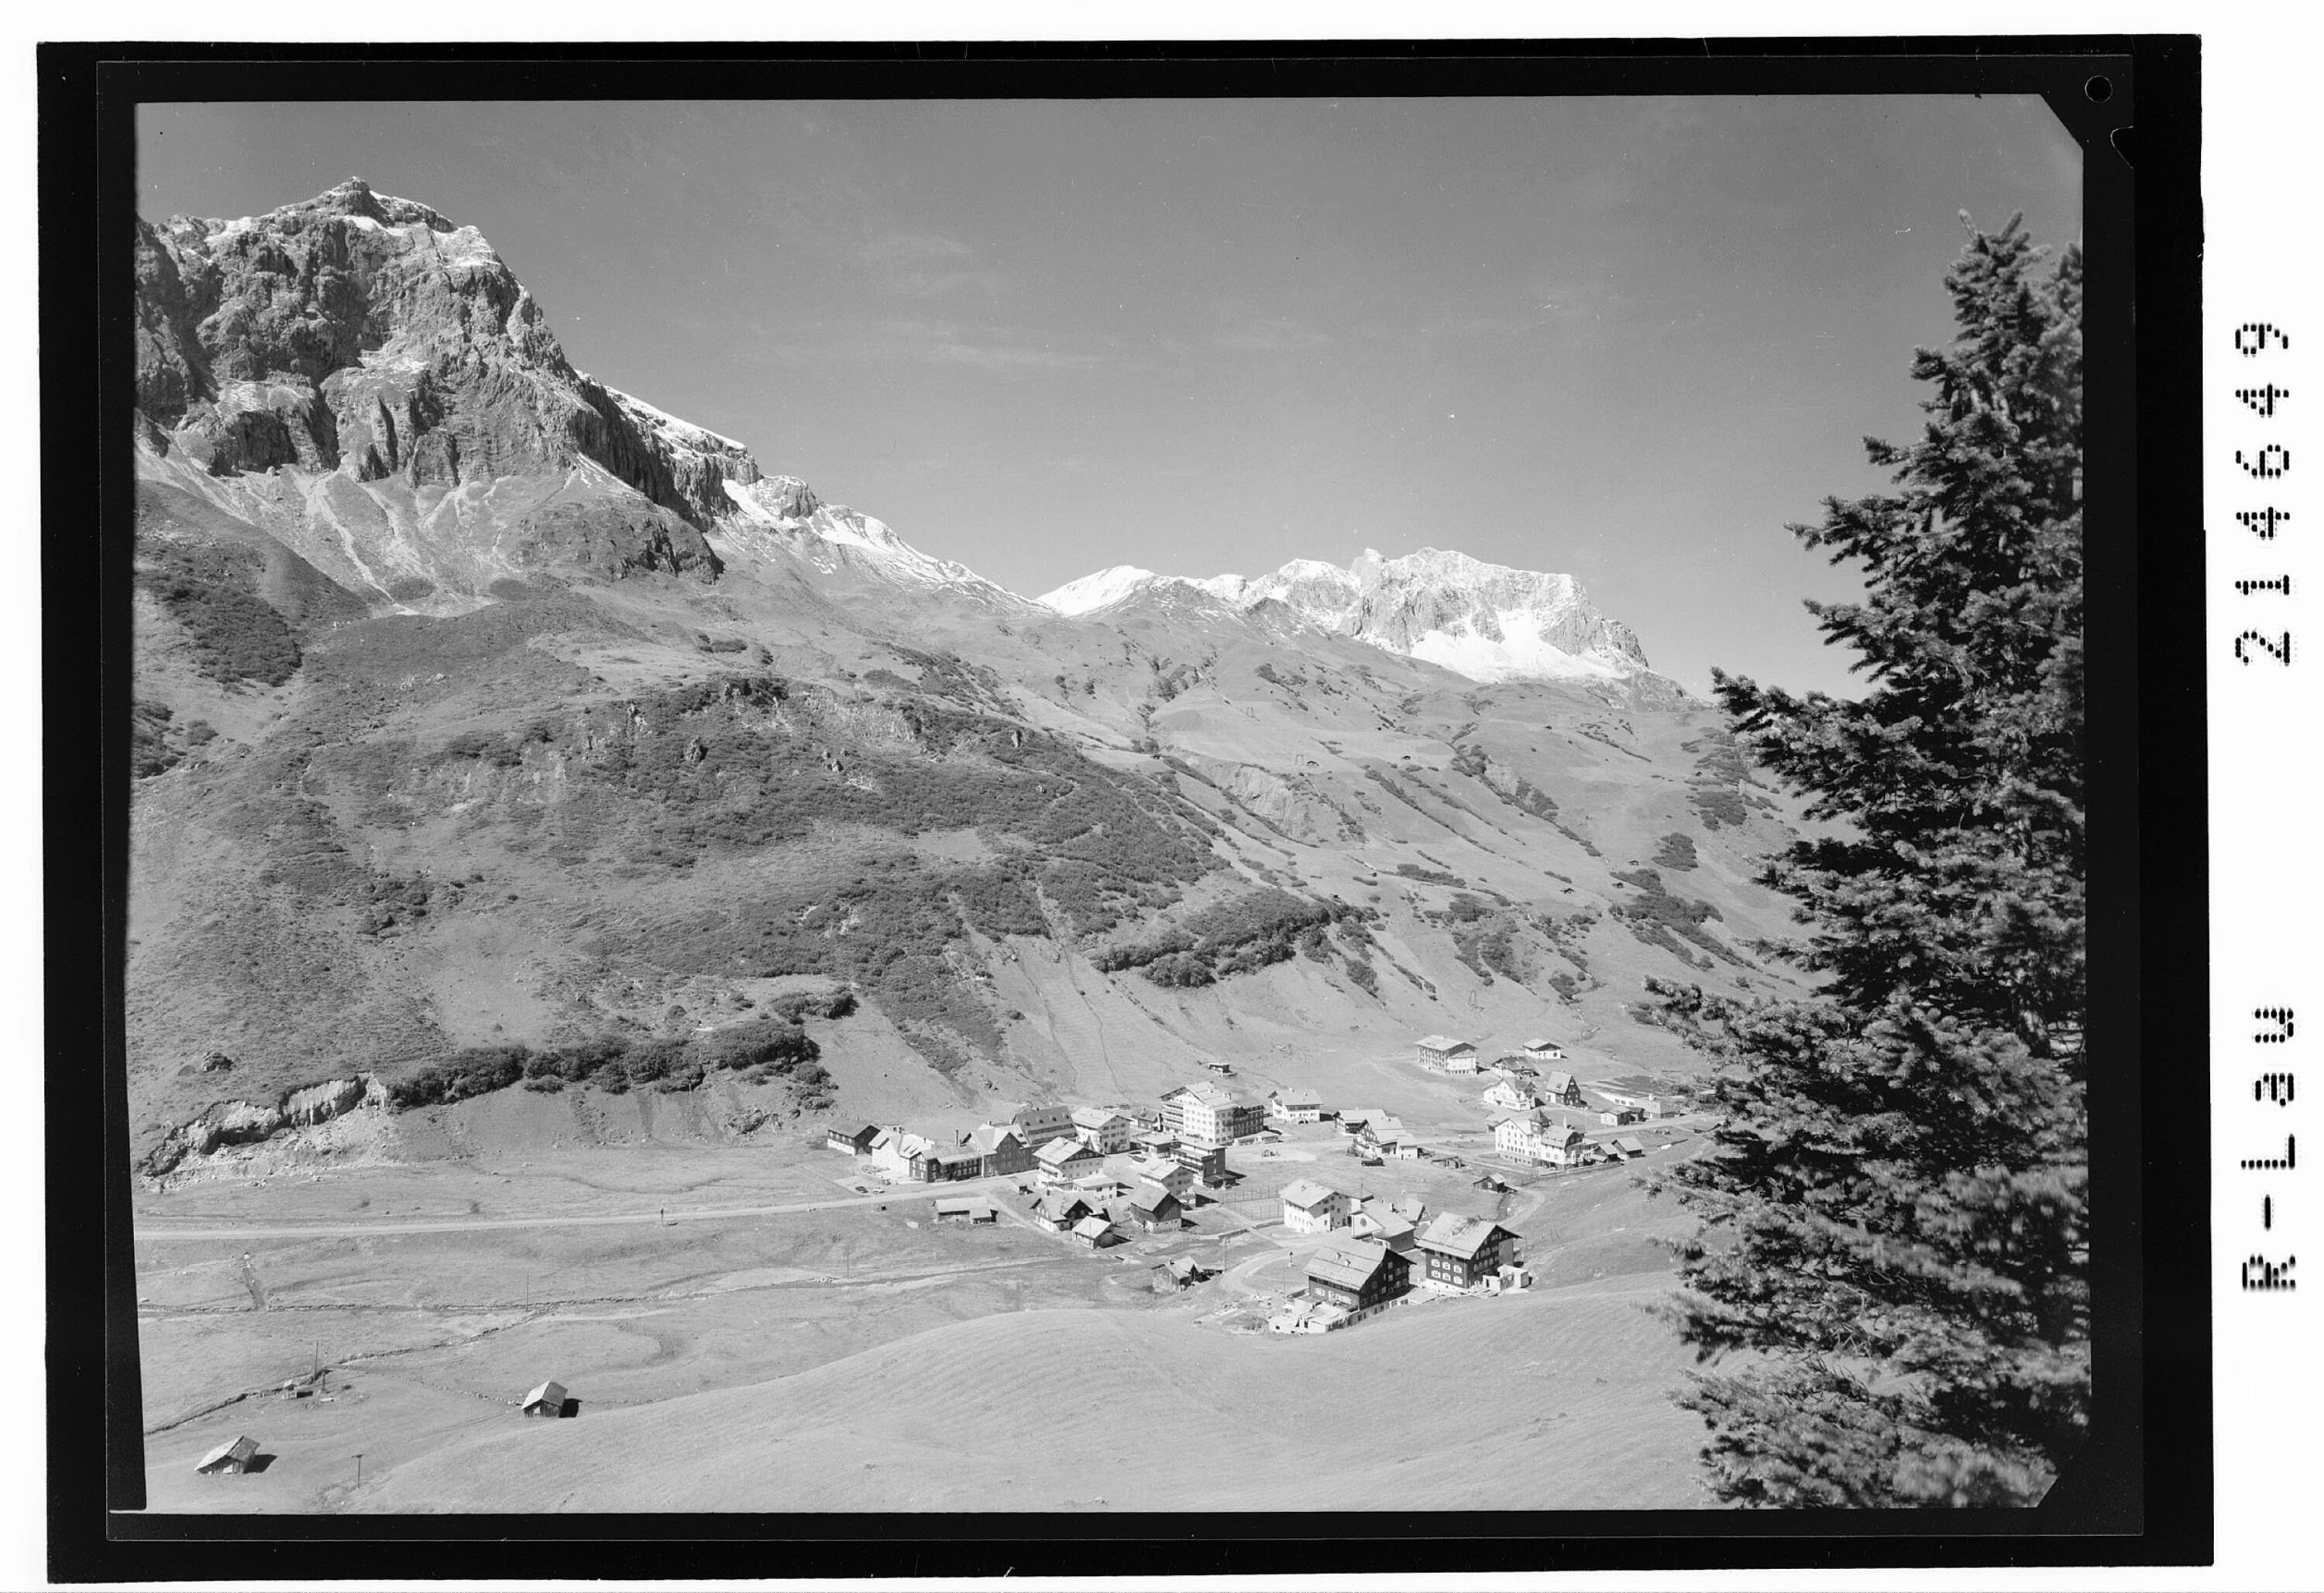 Zürs am Arlberg 1720 m gegen Hasenfluh 2545 m und Omeshorn 2560 m></div>


    <hr>
    <div class=